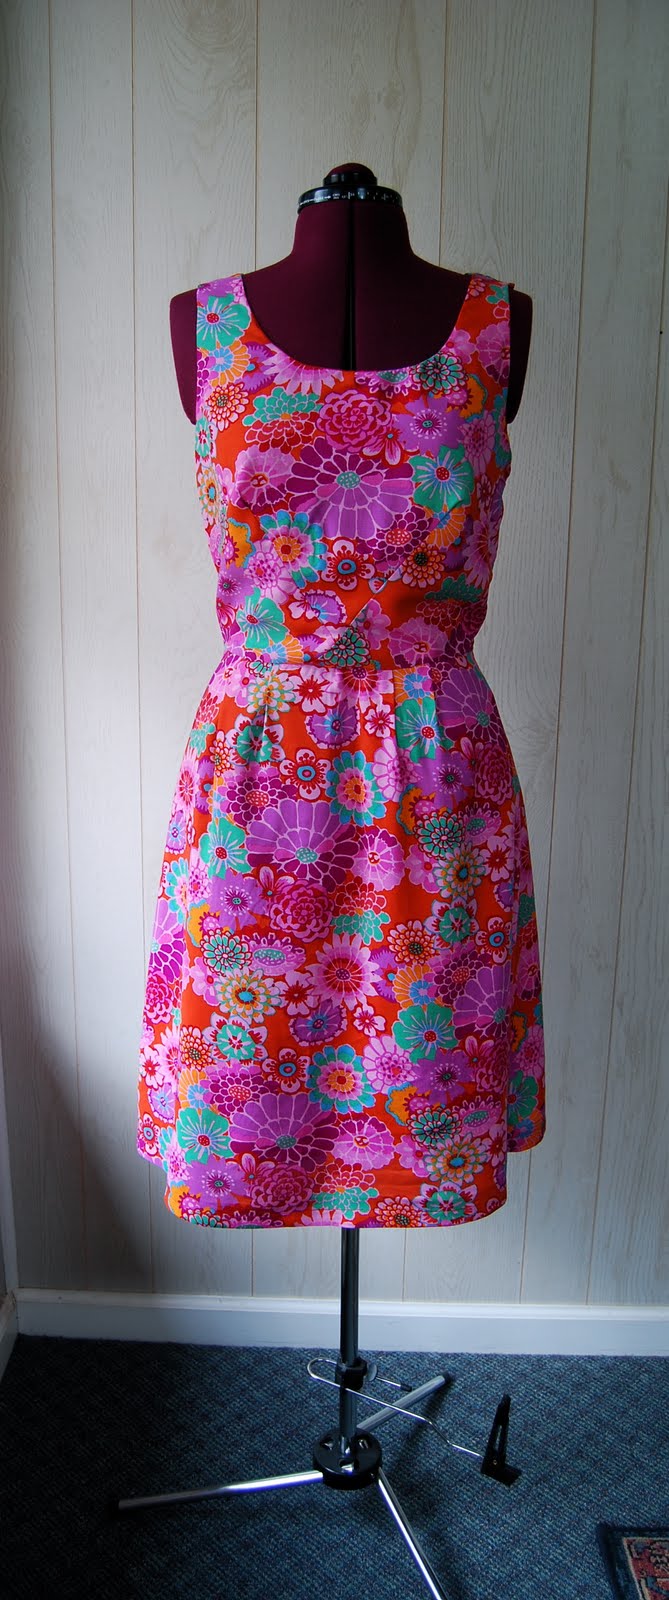 liza jane sews: I Made A Dress